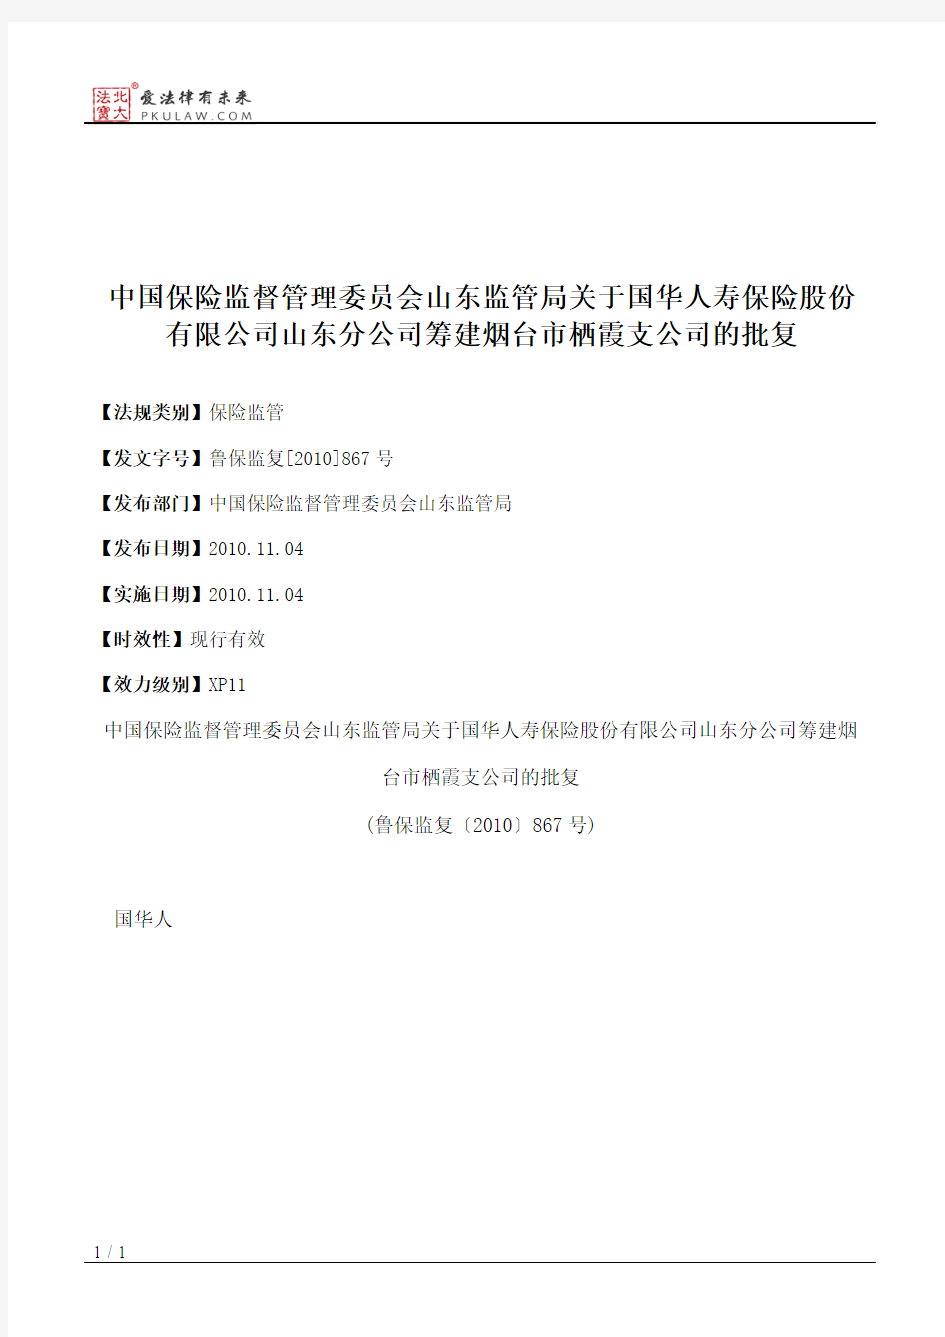 中国保险监督管理委员会山东监管局关于国华人寿保险股份有限公司